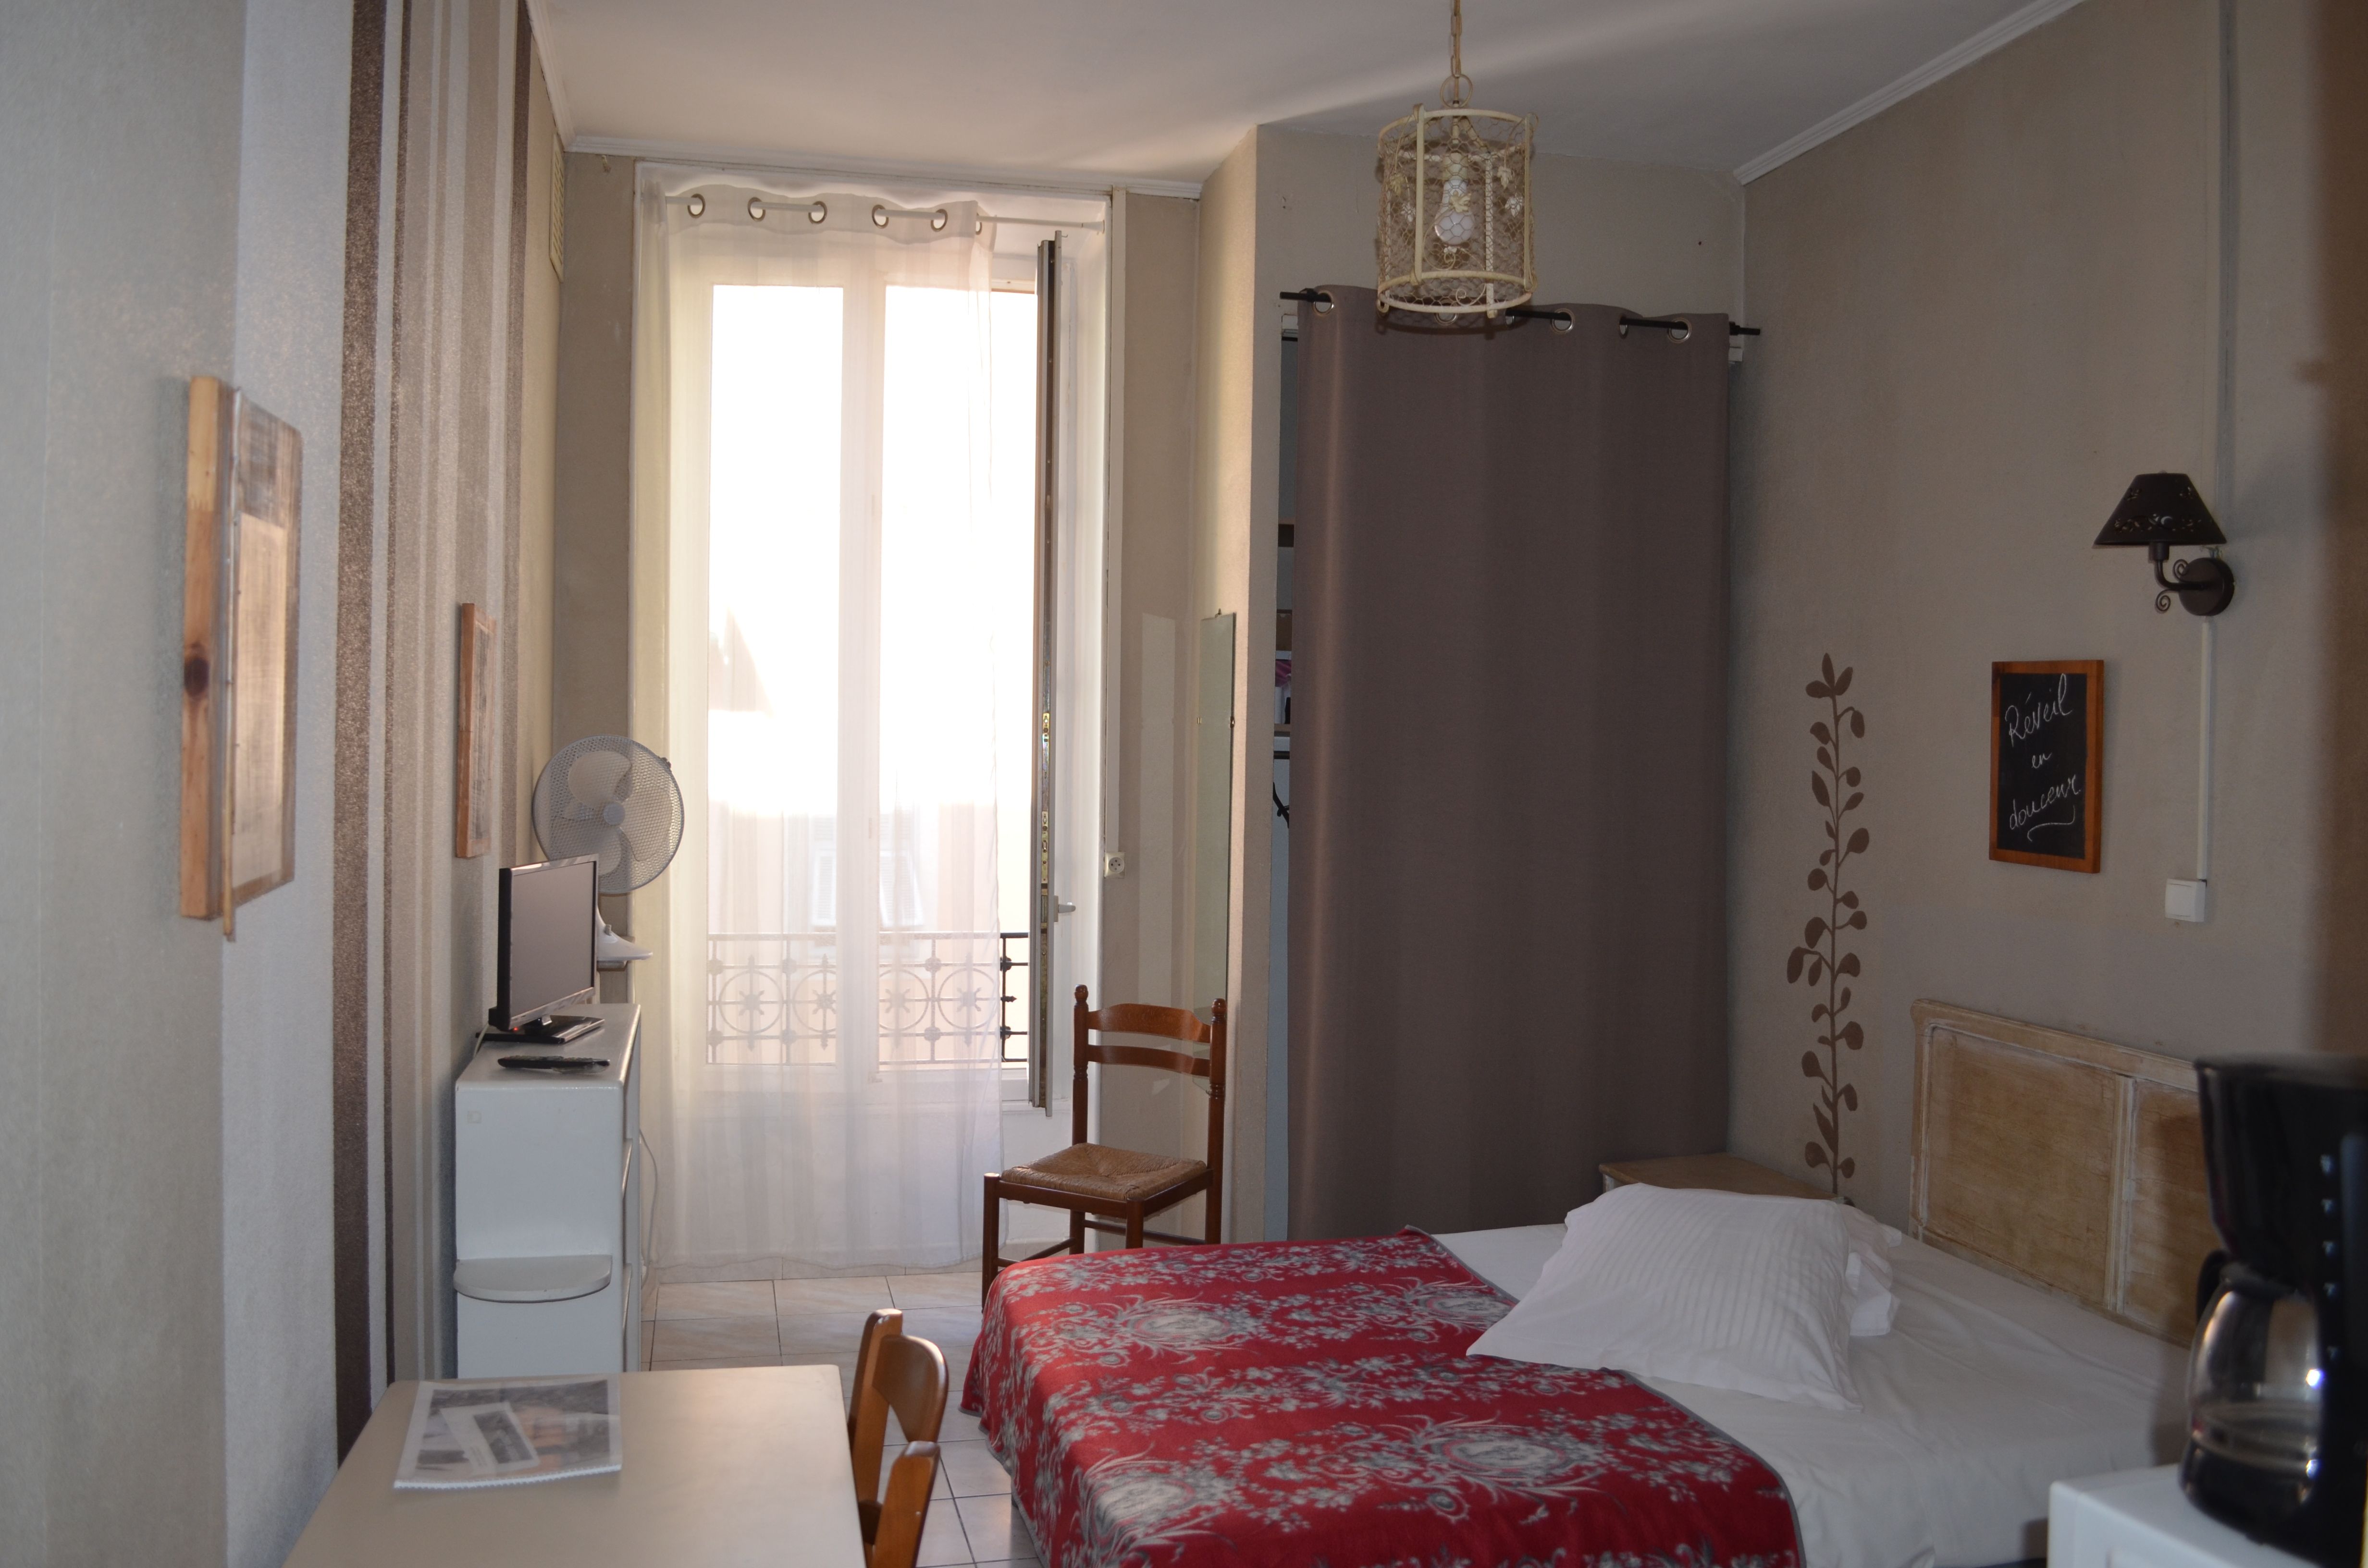 hôtel meublé "Résidence Fricéro" - Hôtels à louer à Nice,  Provence-Alpes-Côte d'Azur, France